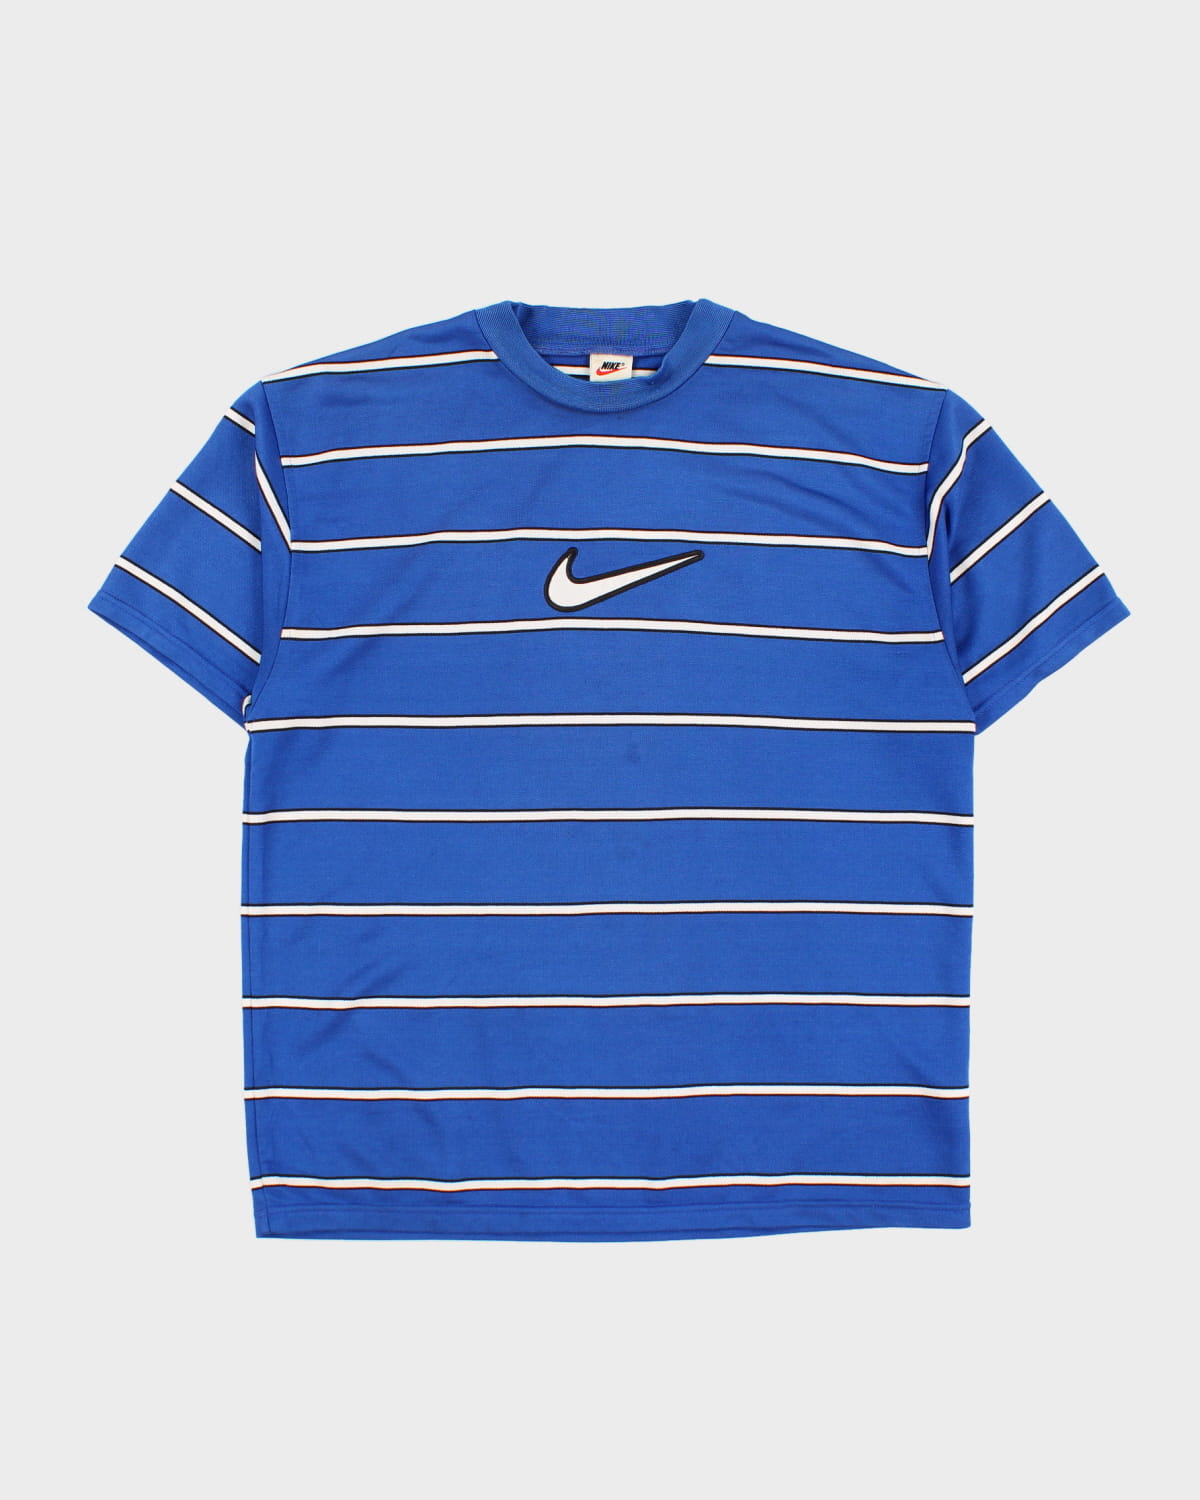 Vintage 90s Nike Striped Centre Swoosh T-Shirt - L – Rokit